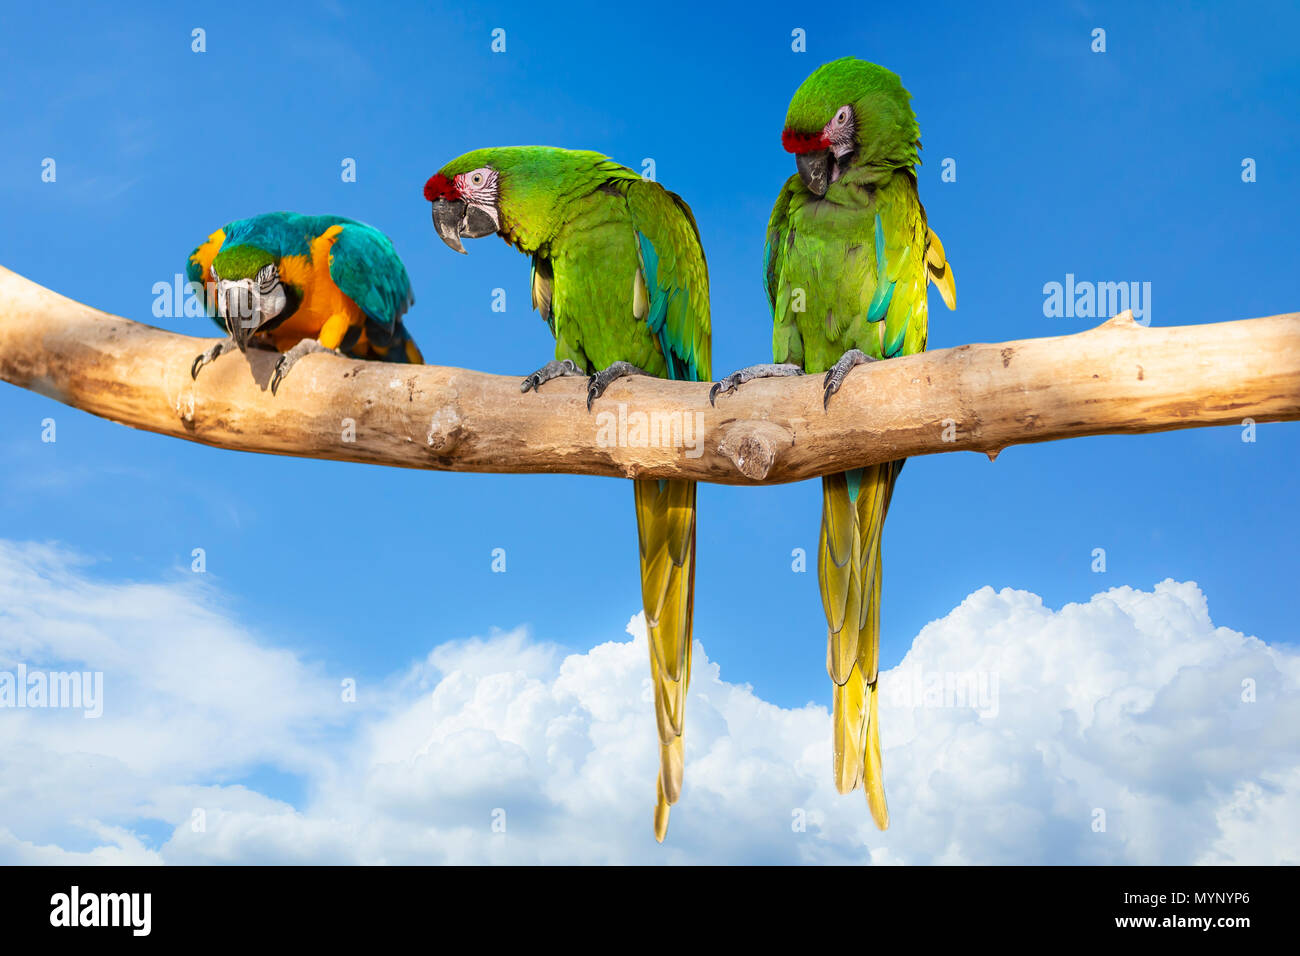 Parrots - Ara ararauna on tree and blue sky - aviation tropical vacation concept Stock Photo